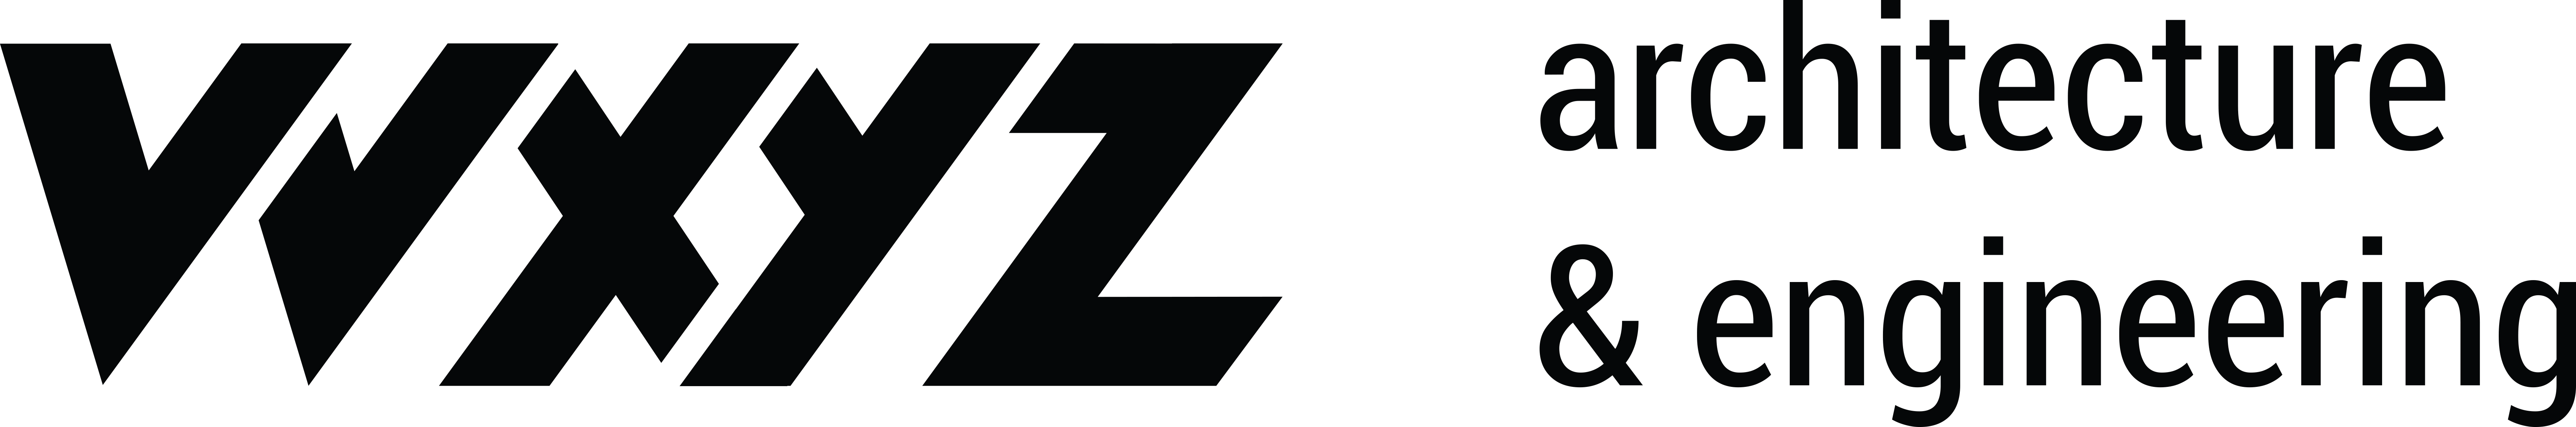 WXYZ_Logo_Horyzontalne_Czarne